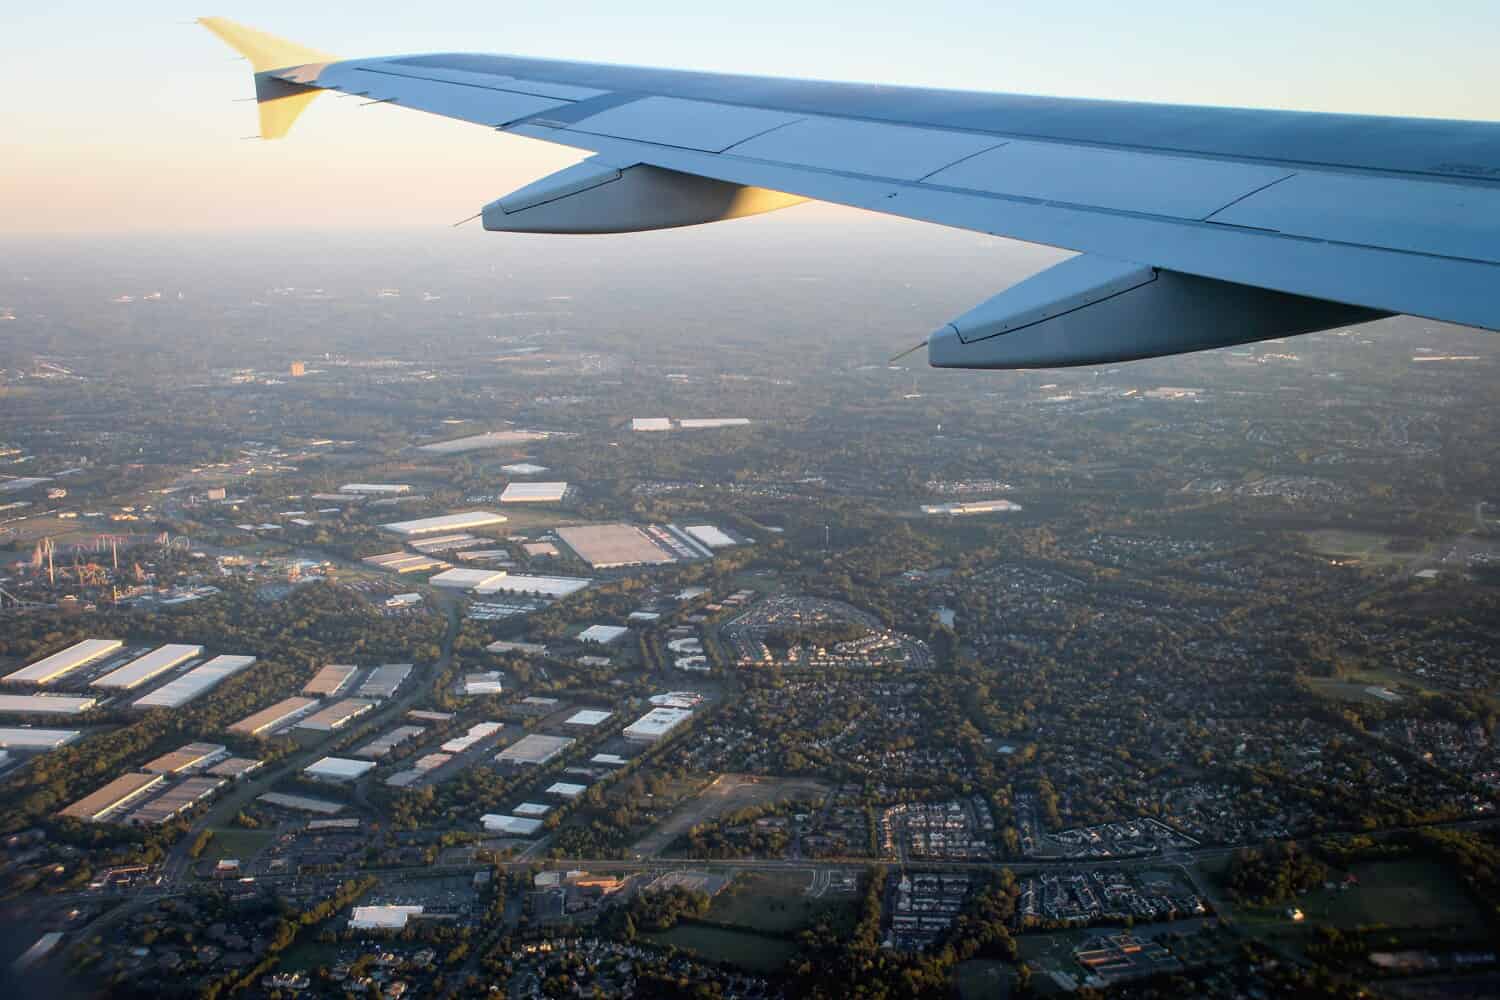 Vista aerea di Charlotte, Carolina del Nord, presa dalla finestra di un aereo in discesa che arriva all'aeroporto internazionale di Charlotte Douglas.